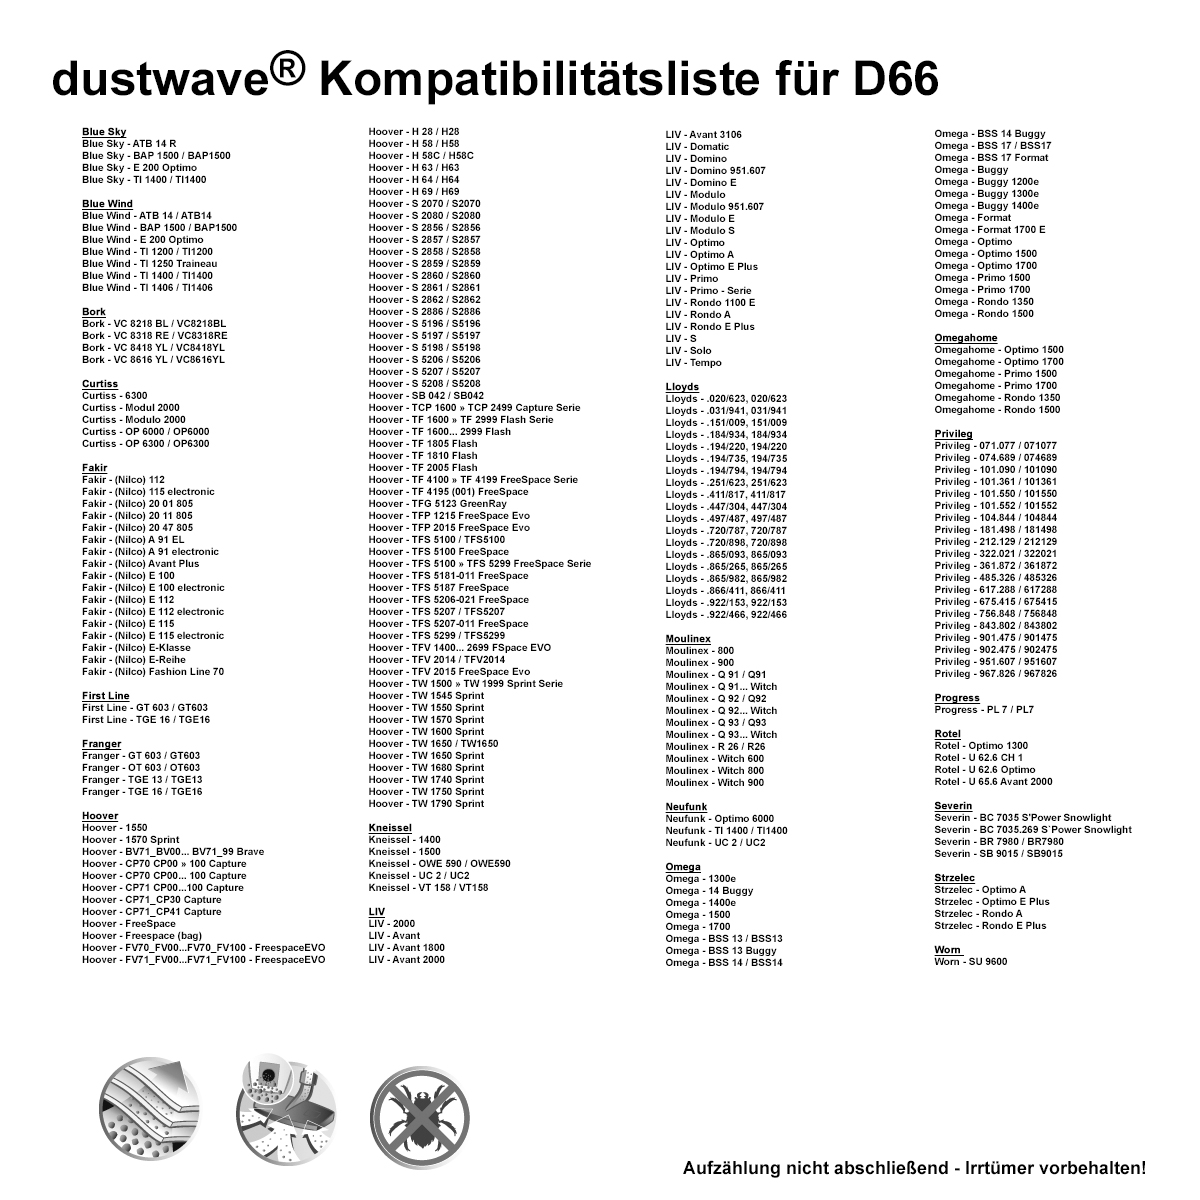 Dustwave® 10 Staubsaugerbeutel für Hoover CP71 CP00...100 Capture - hocheffizient, mehrlagiges Mikrovlies mit Hygieneverschluss - Made in Germany